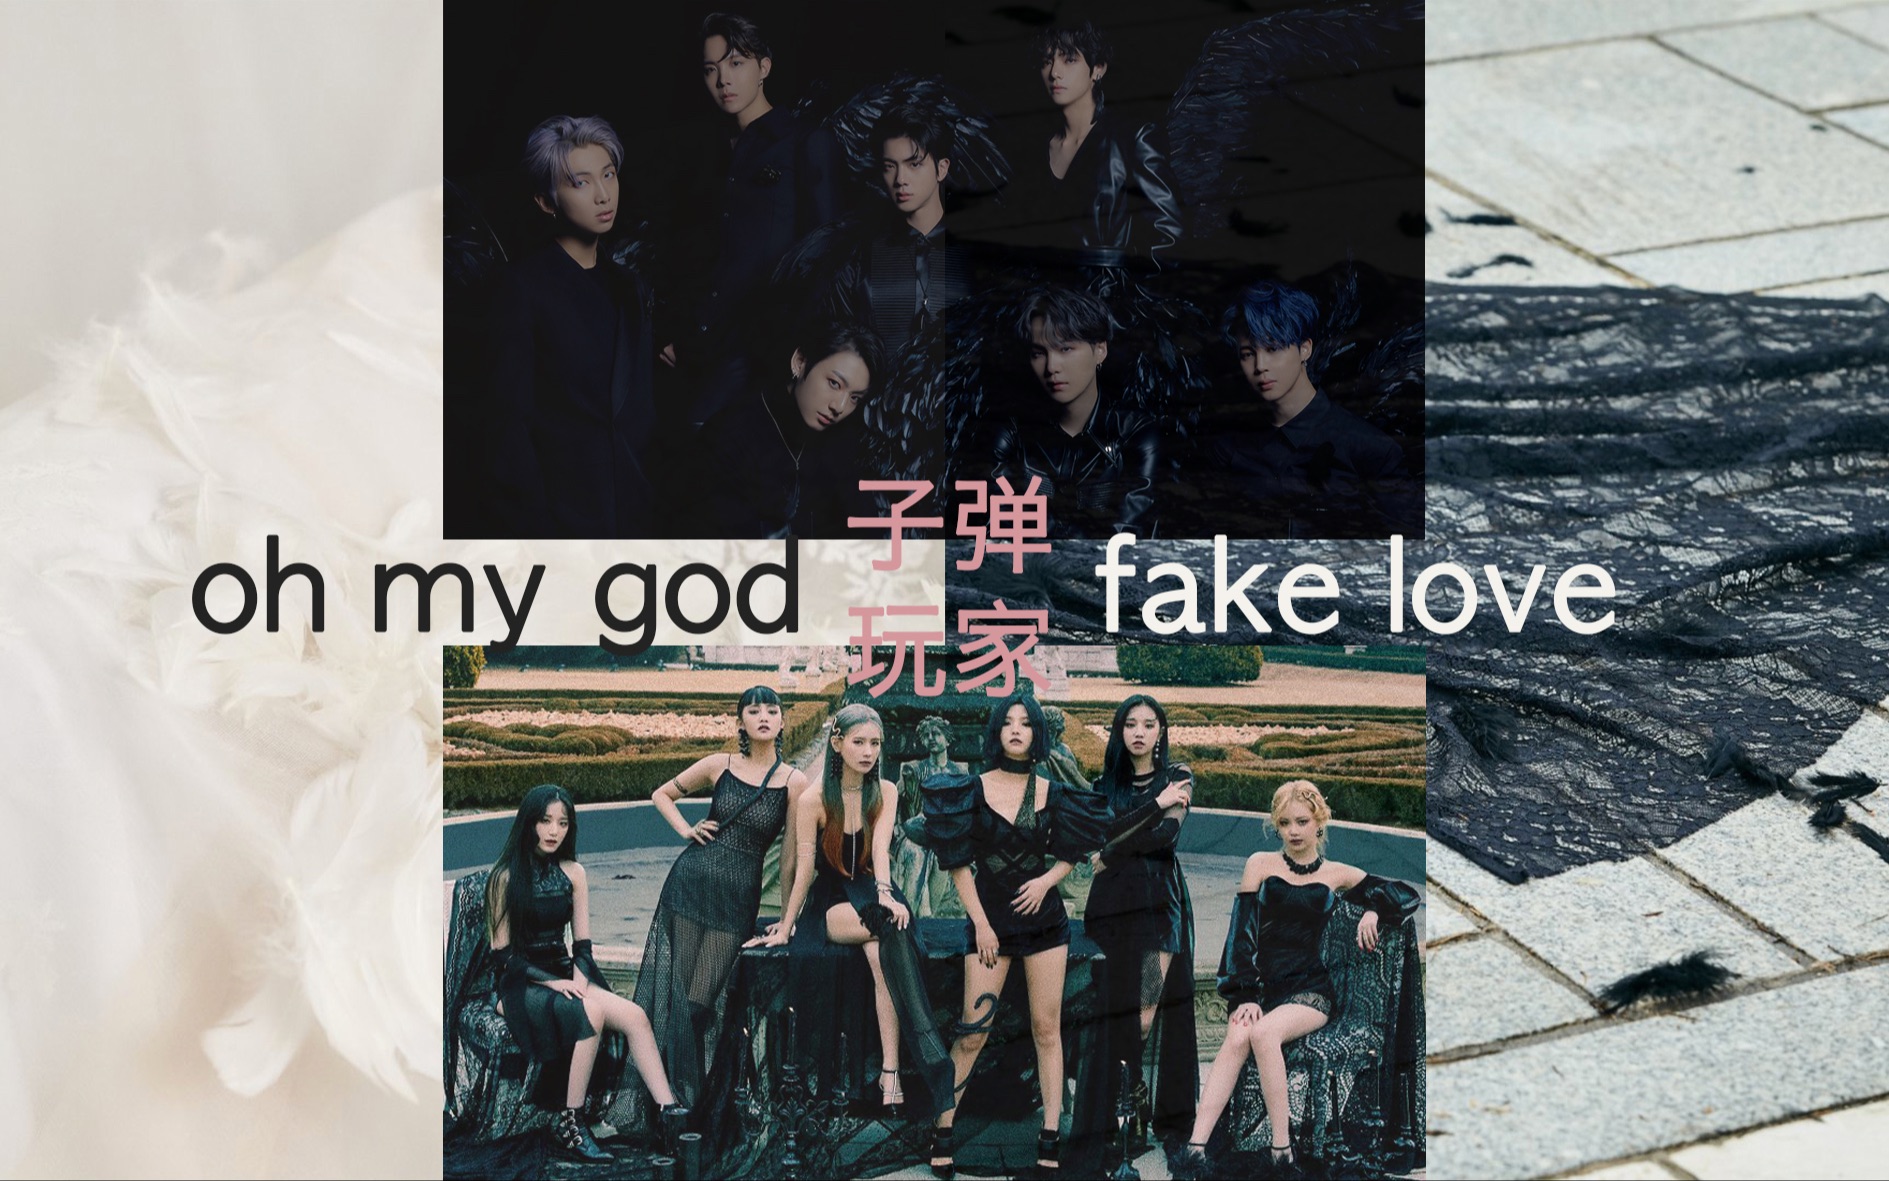 [图]【BTS & (G)I-DLE】《Fake love & Oh my god》概念intro+预告+试听/各种咒语怪诞bgm混剪/子弹玩家/子弹暗黑适配度